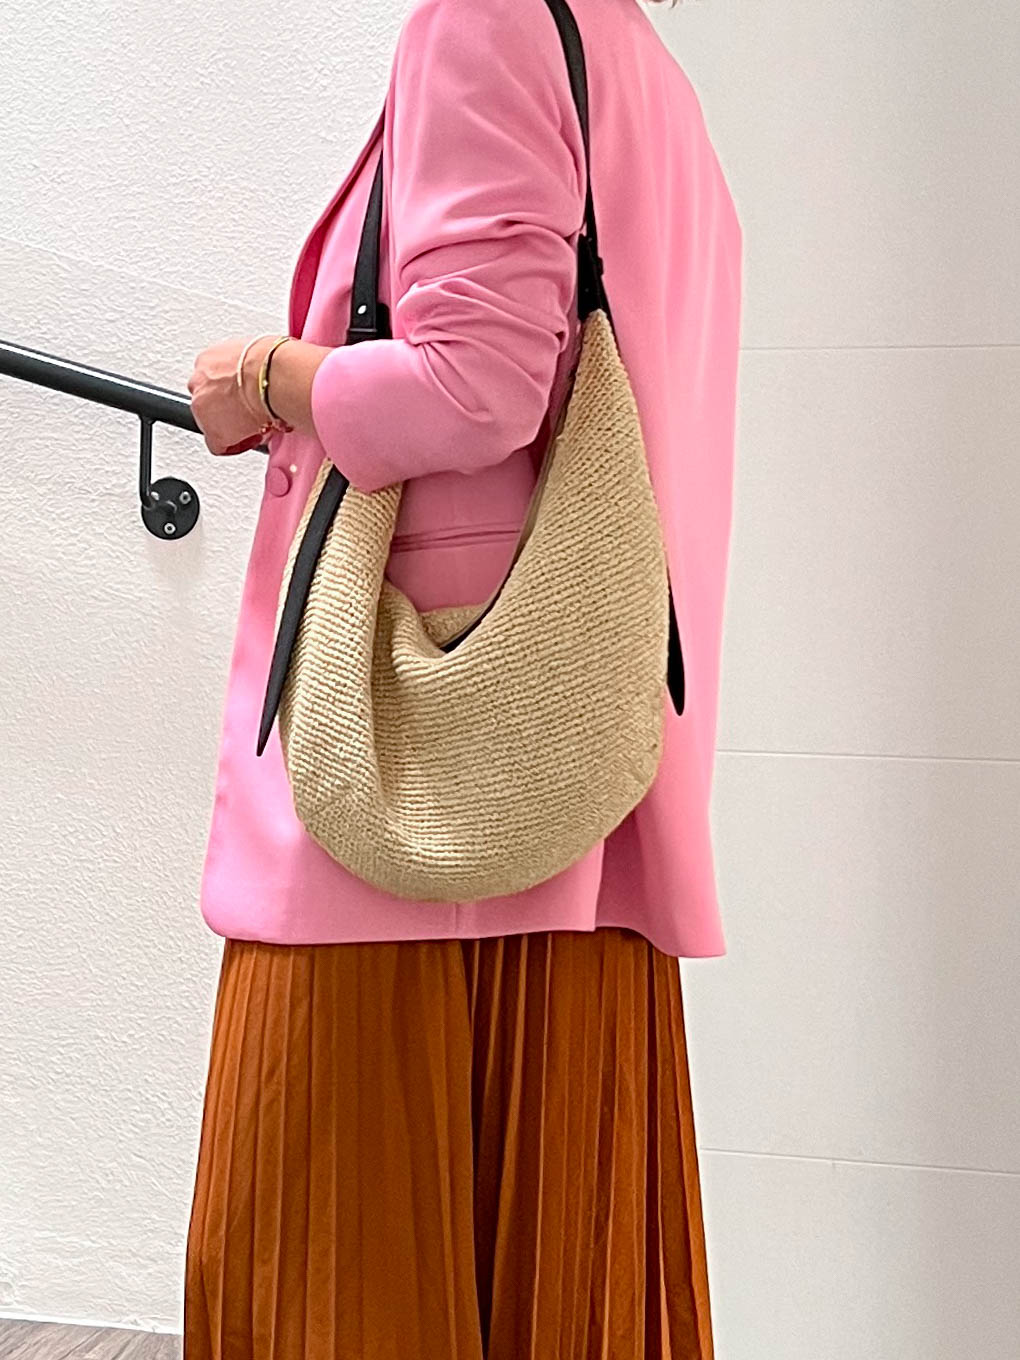 Herbst Outfit zum Thema Pink kombinieren: Brauner Midirock, pinker Blazer, Nieten-Boots und Strohtasche. Alle Outfit-Details auf whoismocca.com